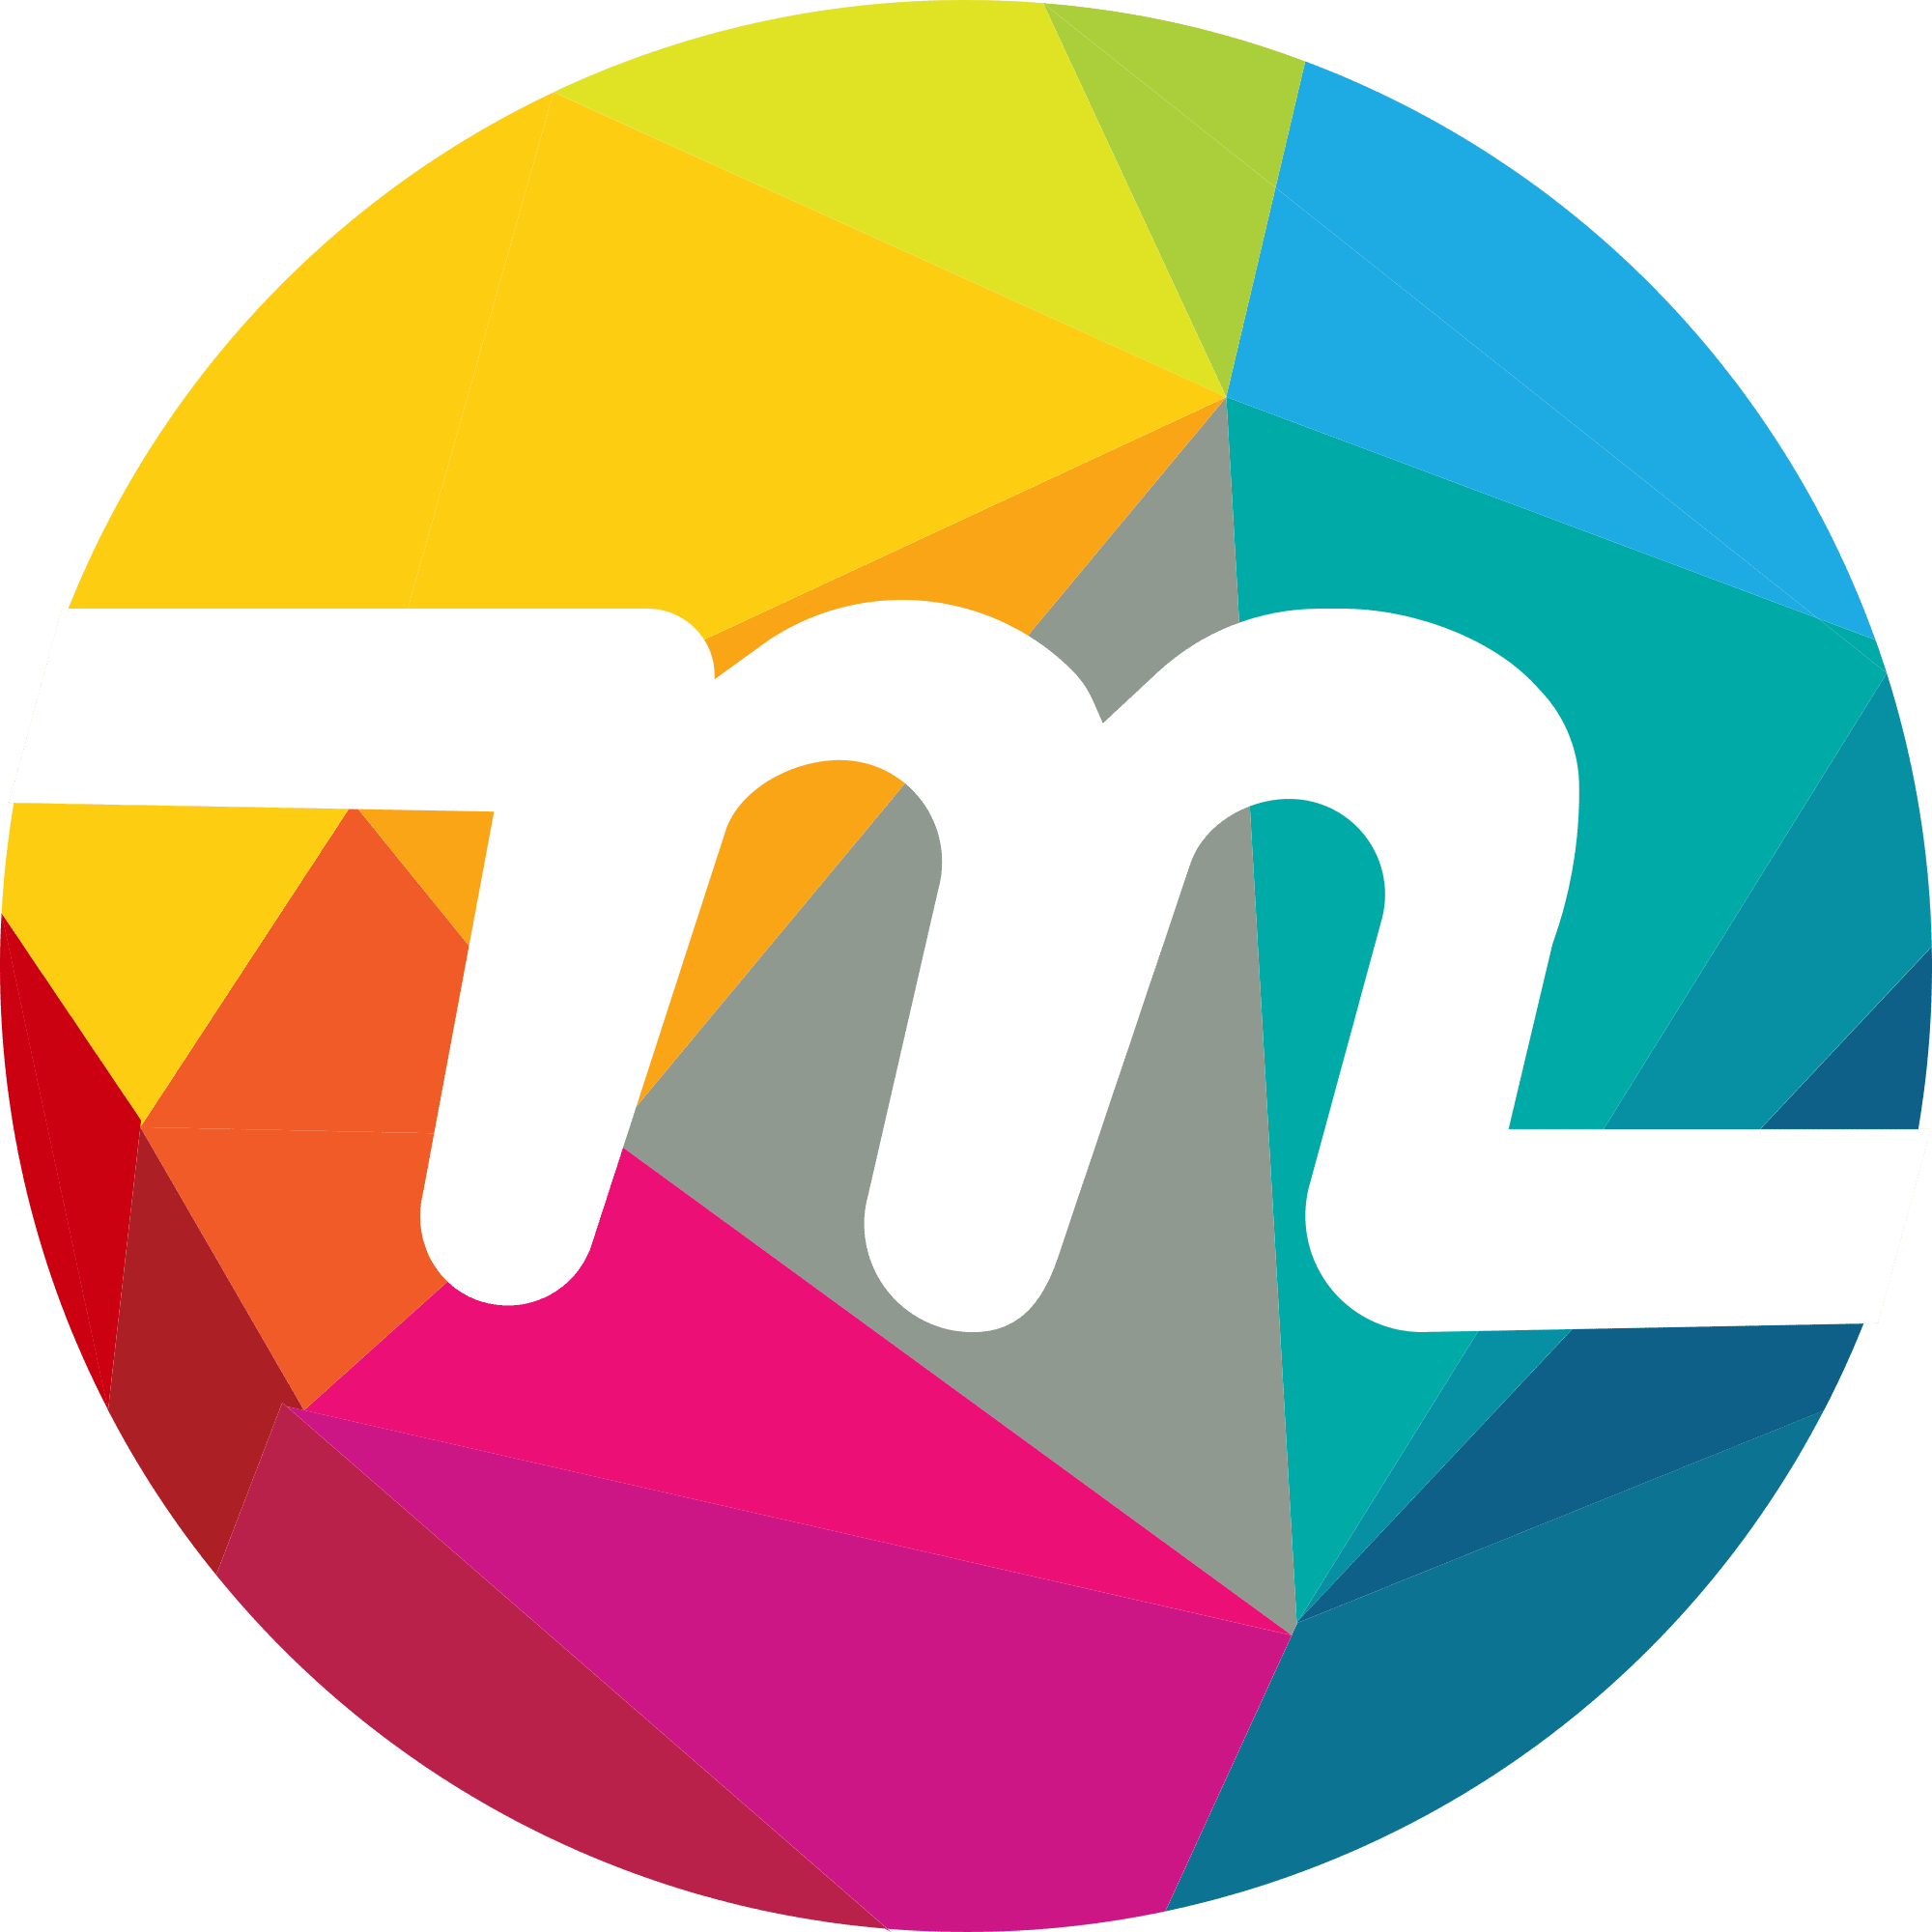 Myriad (XMY) logo